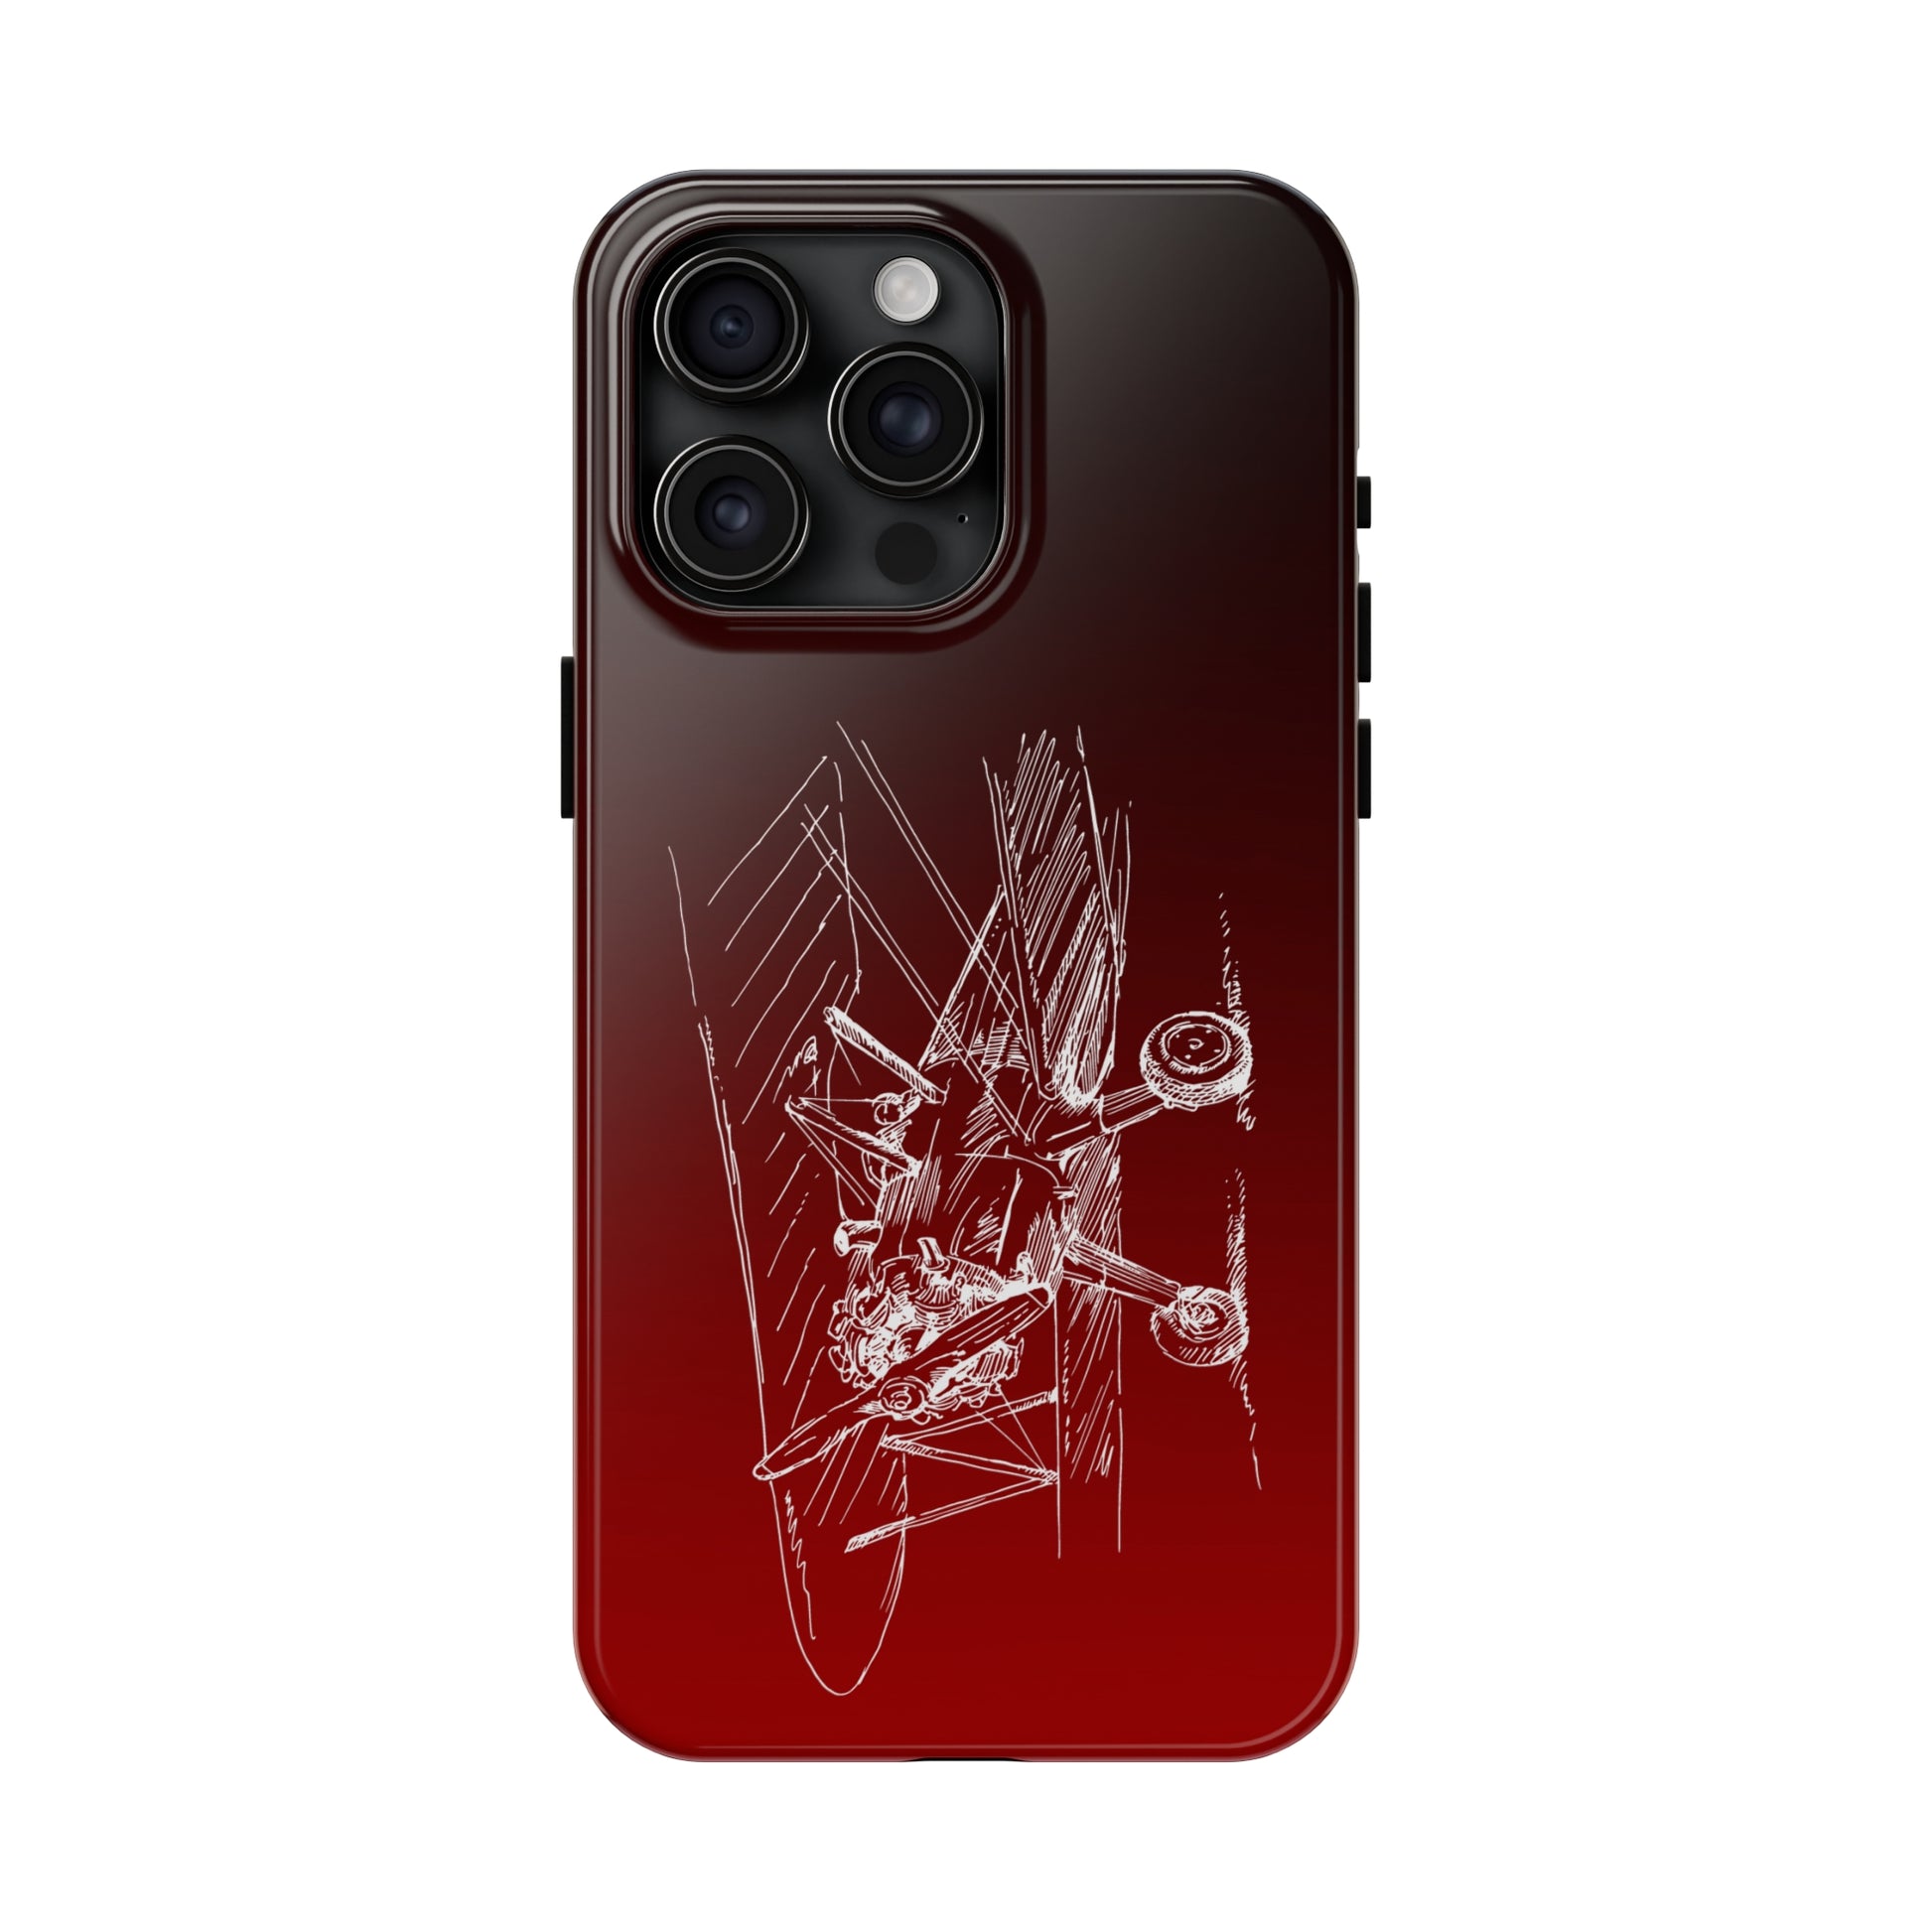 Aero 4 (red) tough phone cases